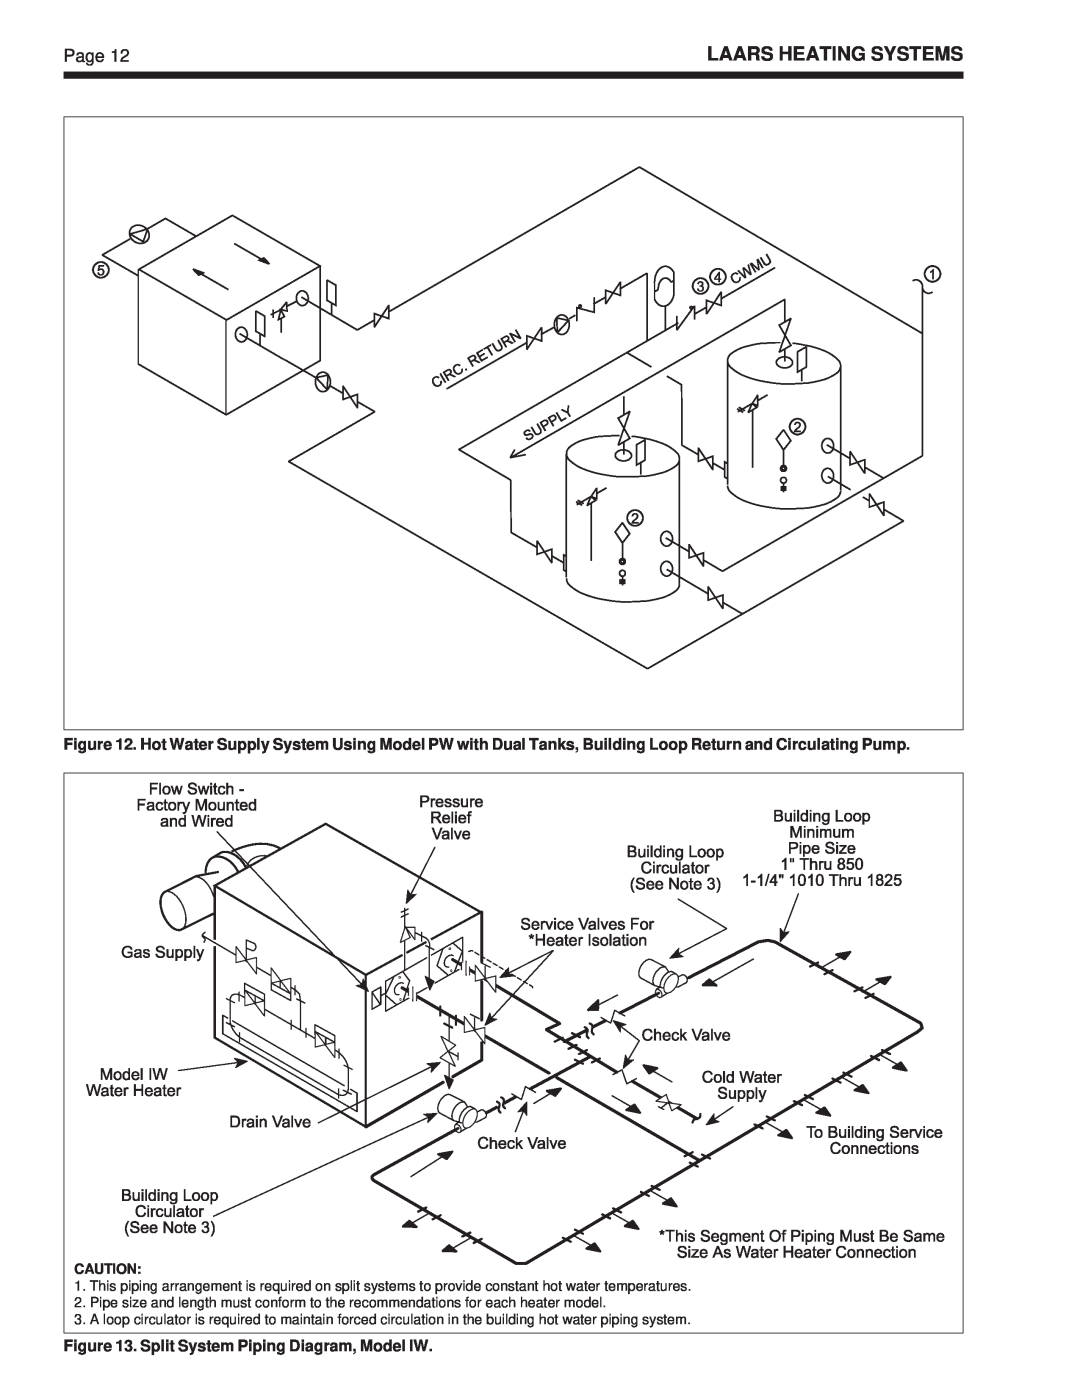 Laarsen Associates PW, VW warranty Laars Heating Systems, Split System Piping Diagram, Model IW 